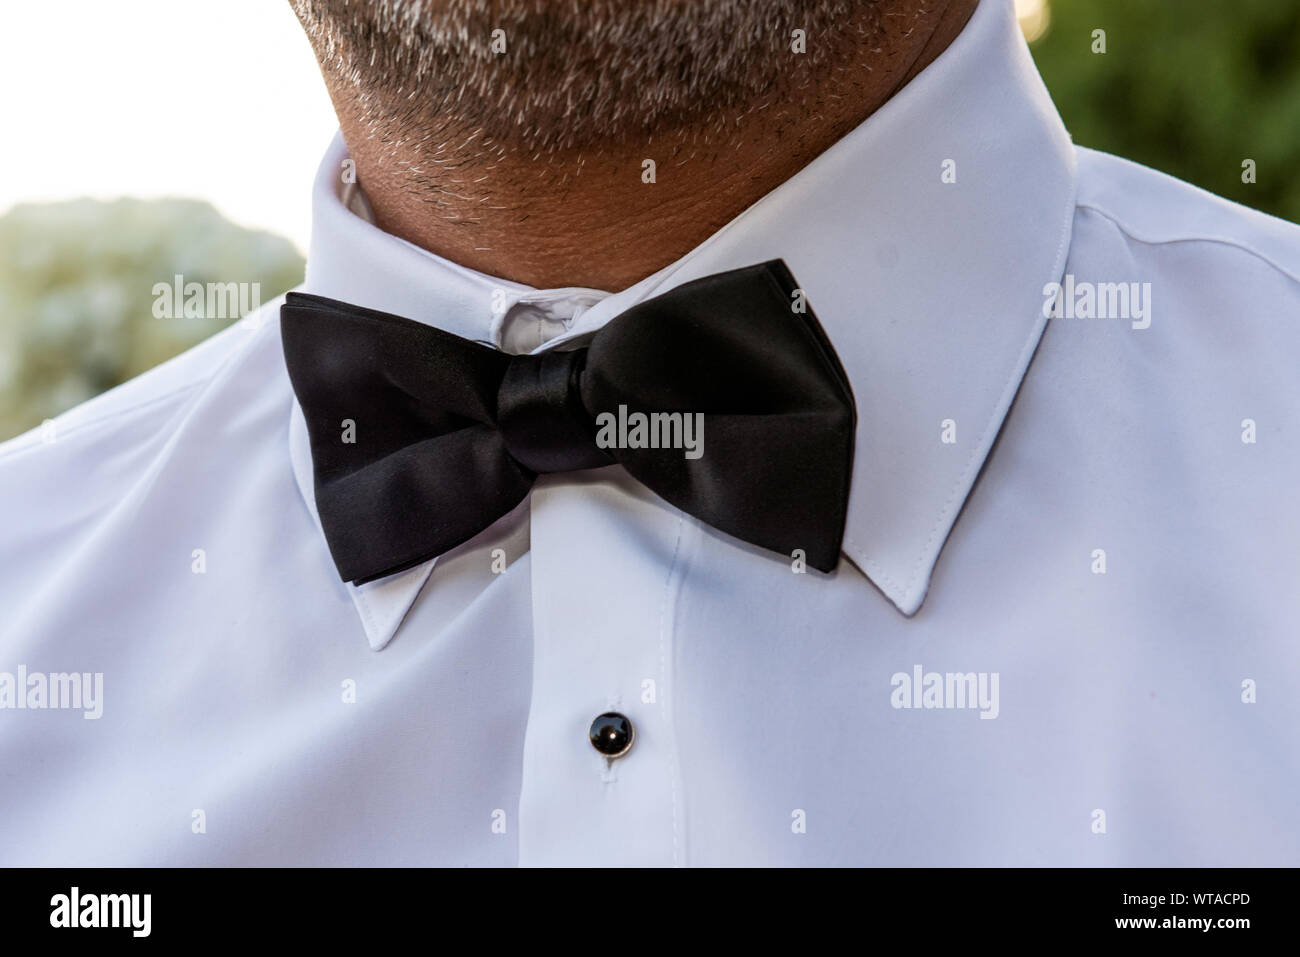 Nero farfallino è l'ultima voce di apparrel che lo sposo mette sulla sua tuxedo prima della grande cerimonia. Foto Stock